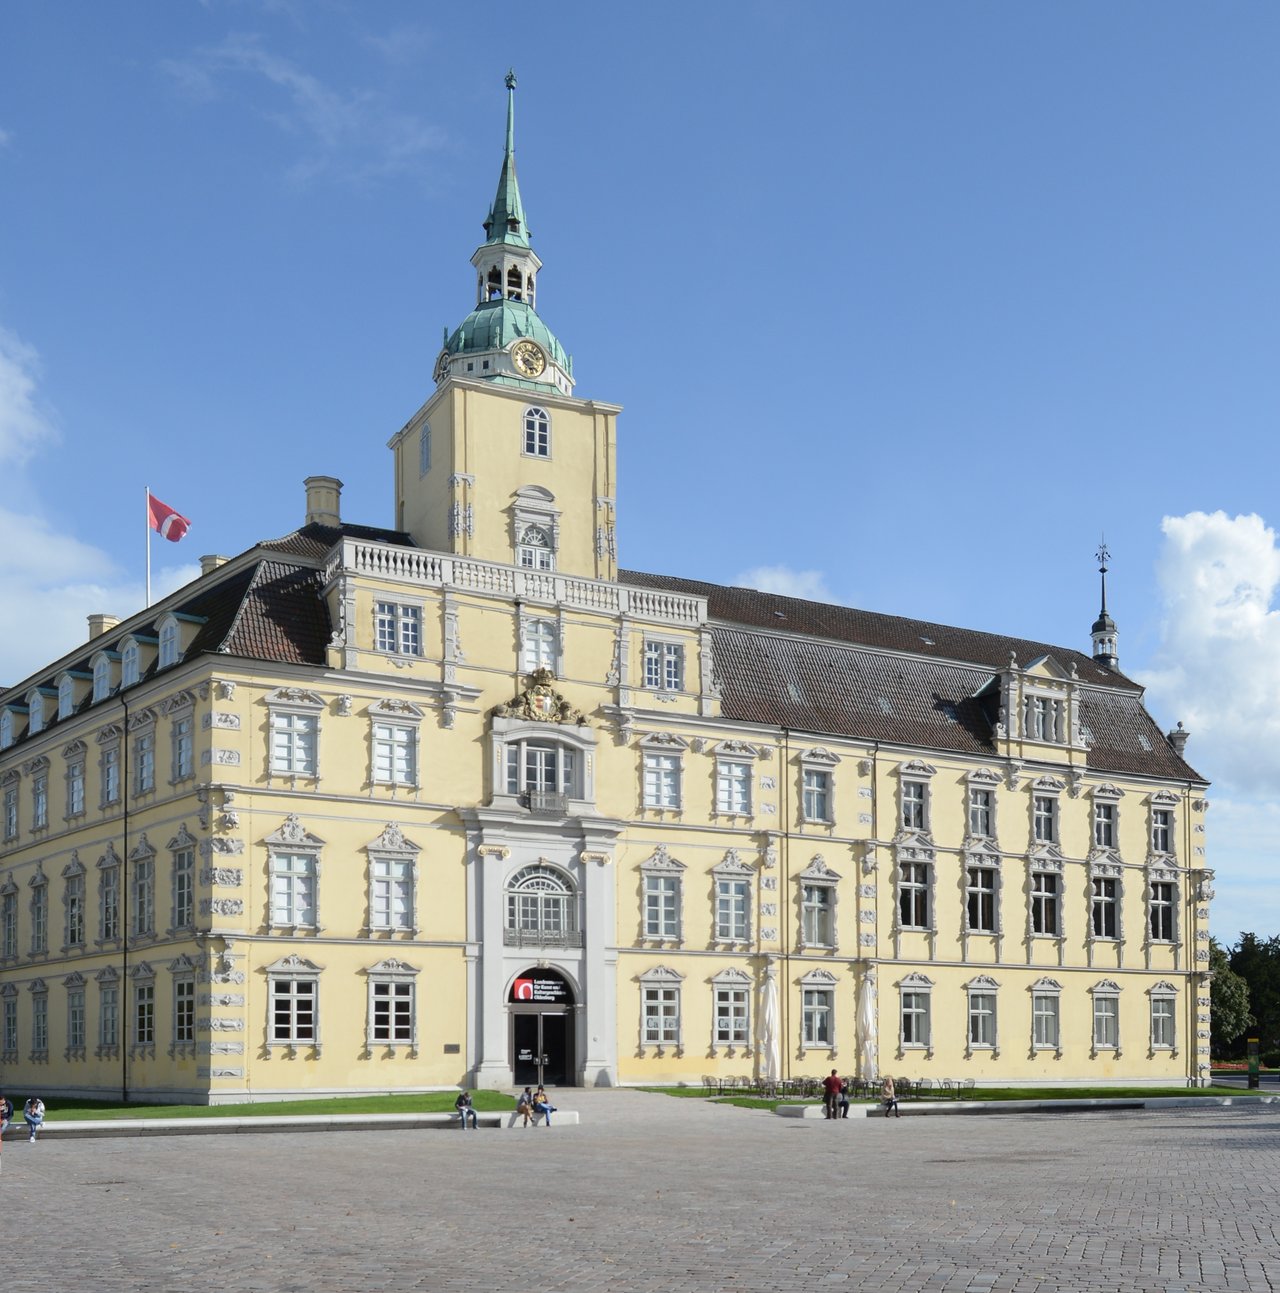 Außenaufnahme des Oldenburger Schlosses.